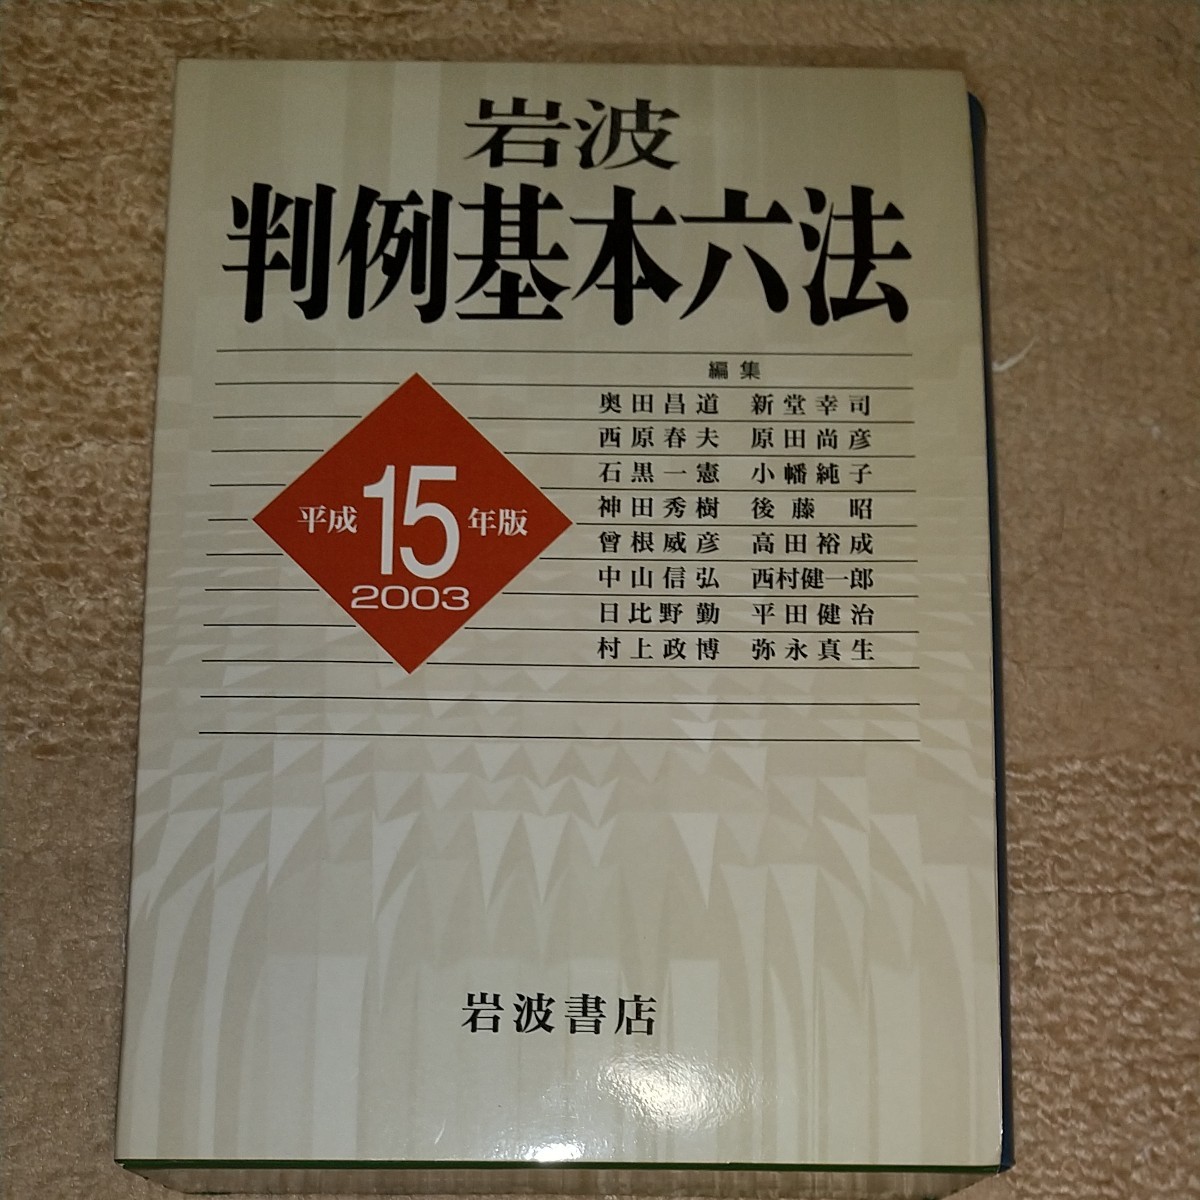 岩波判例基本六法 平成15(2003)年版